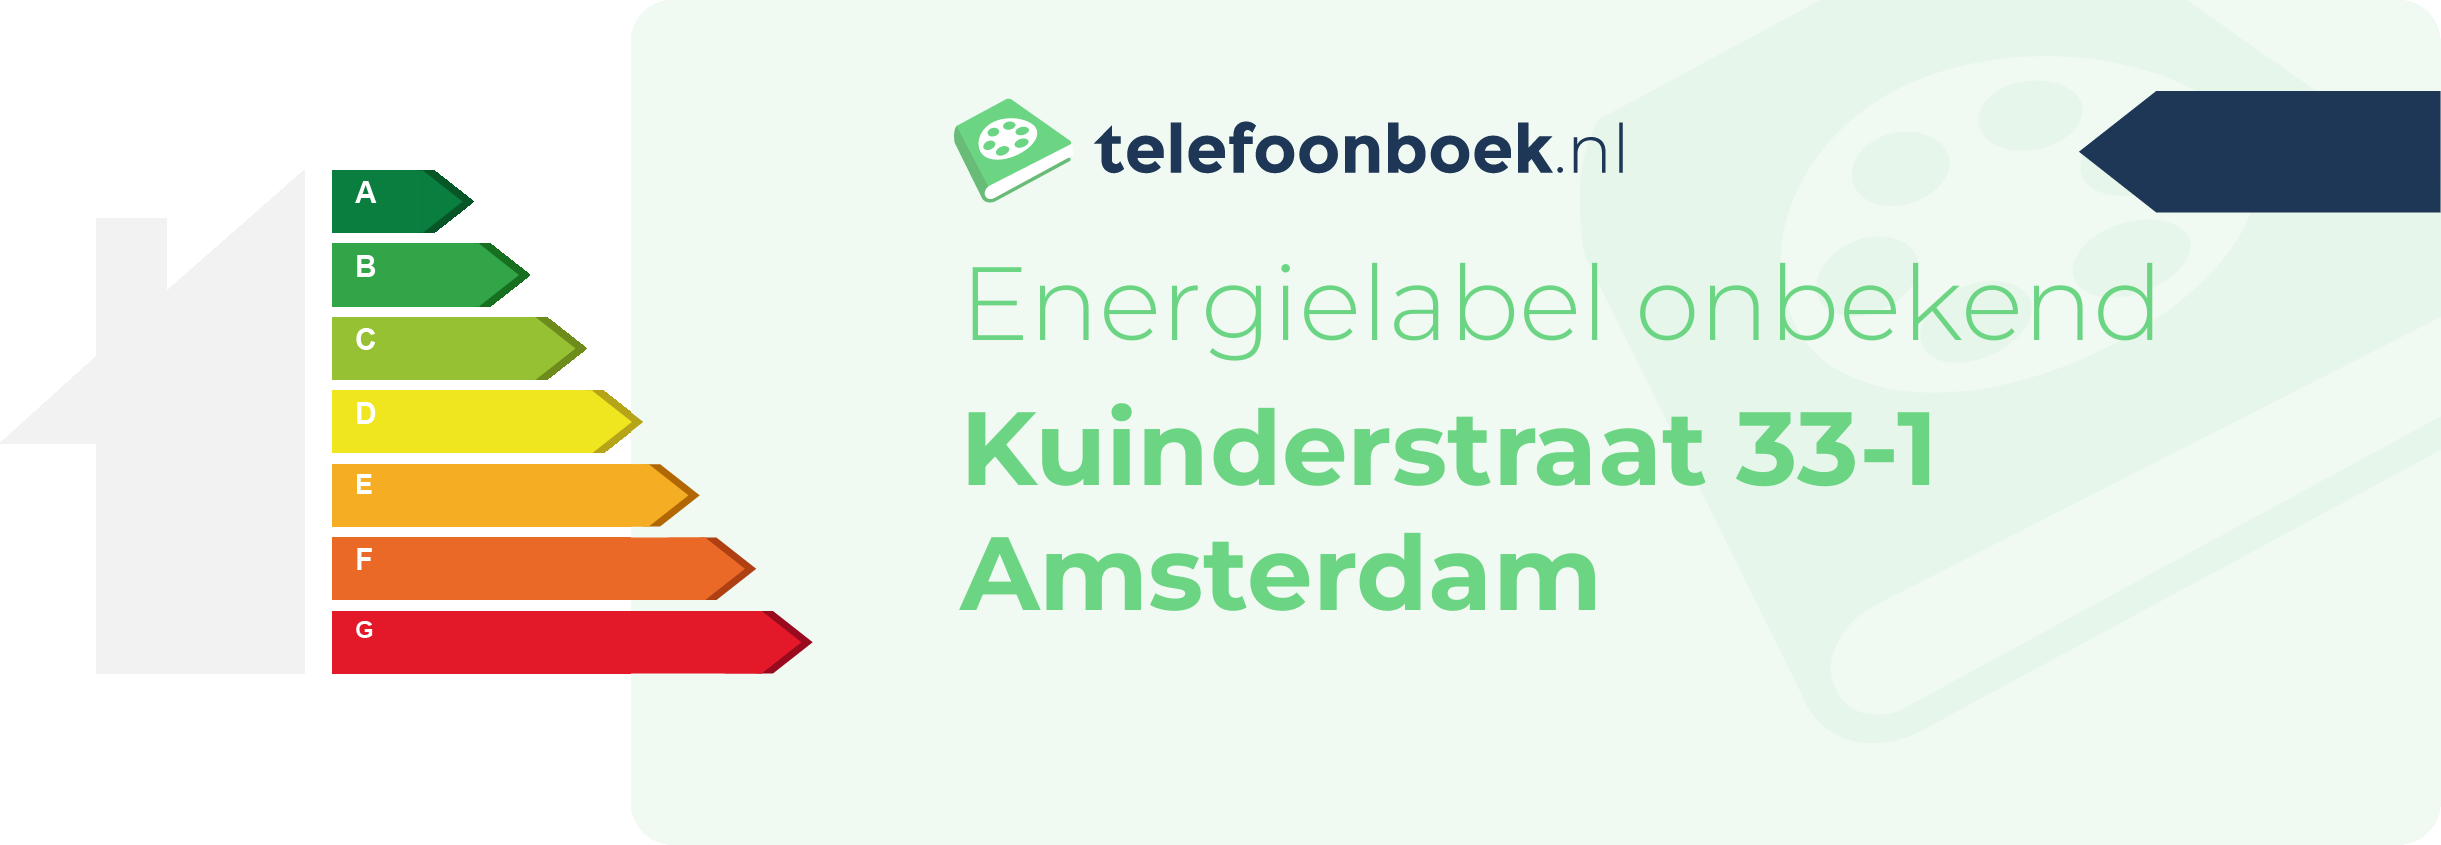 Energielabel Kuinderstraat 33-1 Amsterdam